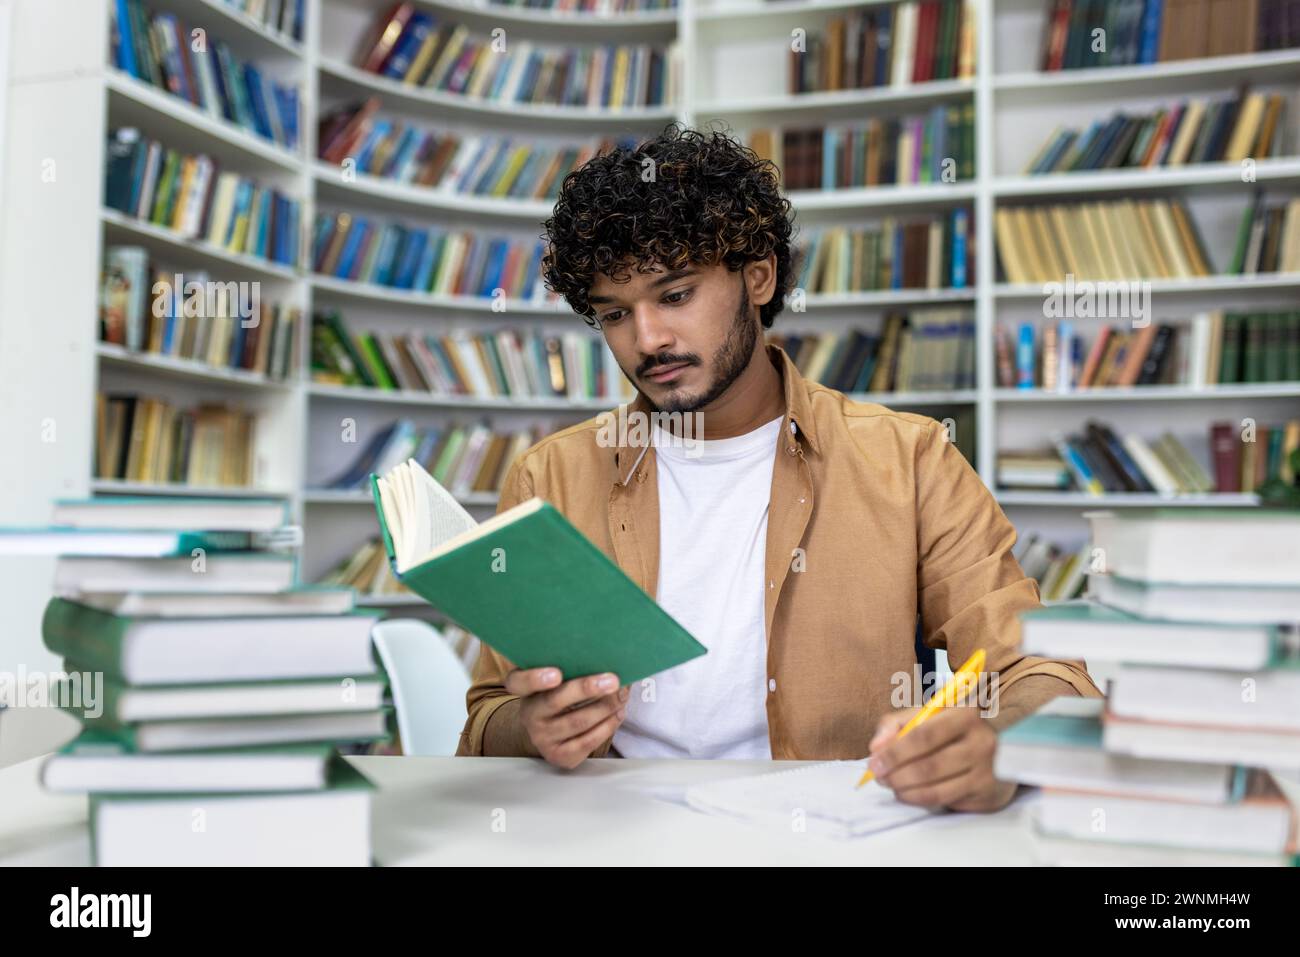 Ein engagierter Student, der in das Lesen eines Buches vertieft ist, umgeben von Haufen von Lehrbüchern, und sich fleißig auf anstehende Prüfungen in der ruhigen Atmosphäre einer Universitätsbibliothek vorbereitet. Stockfoto